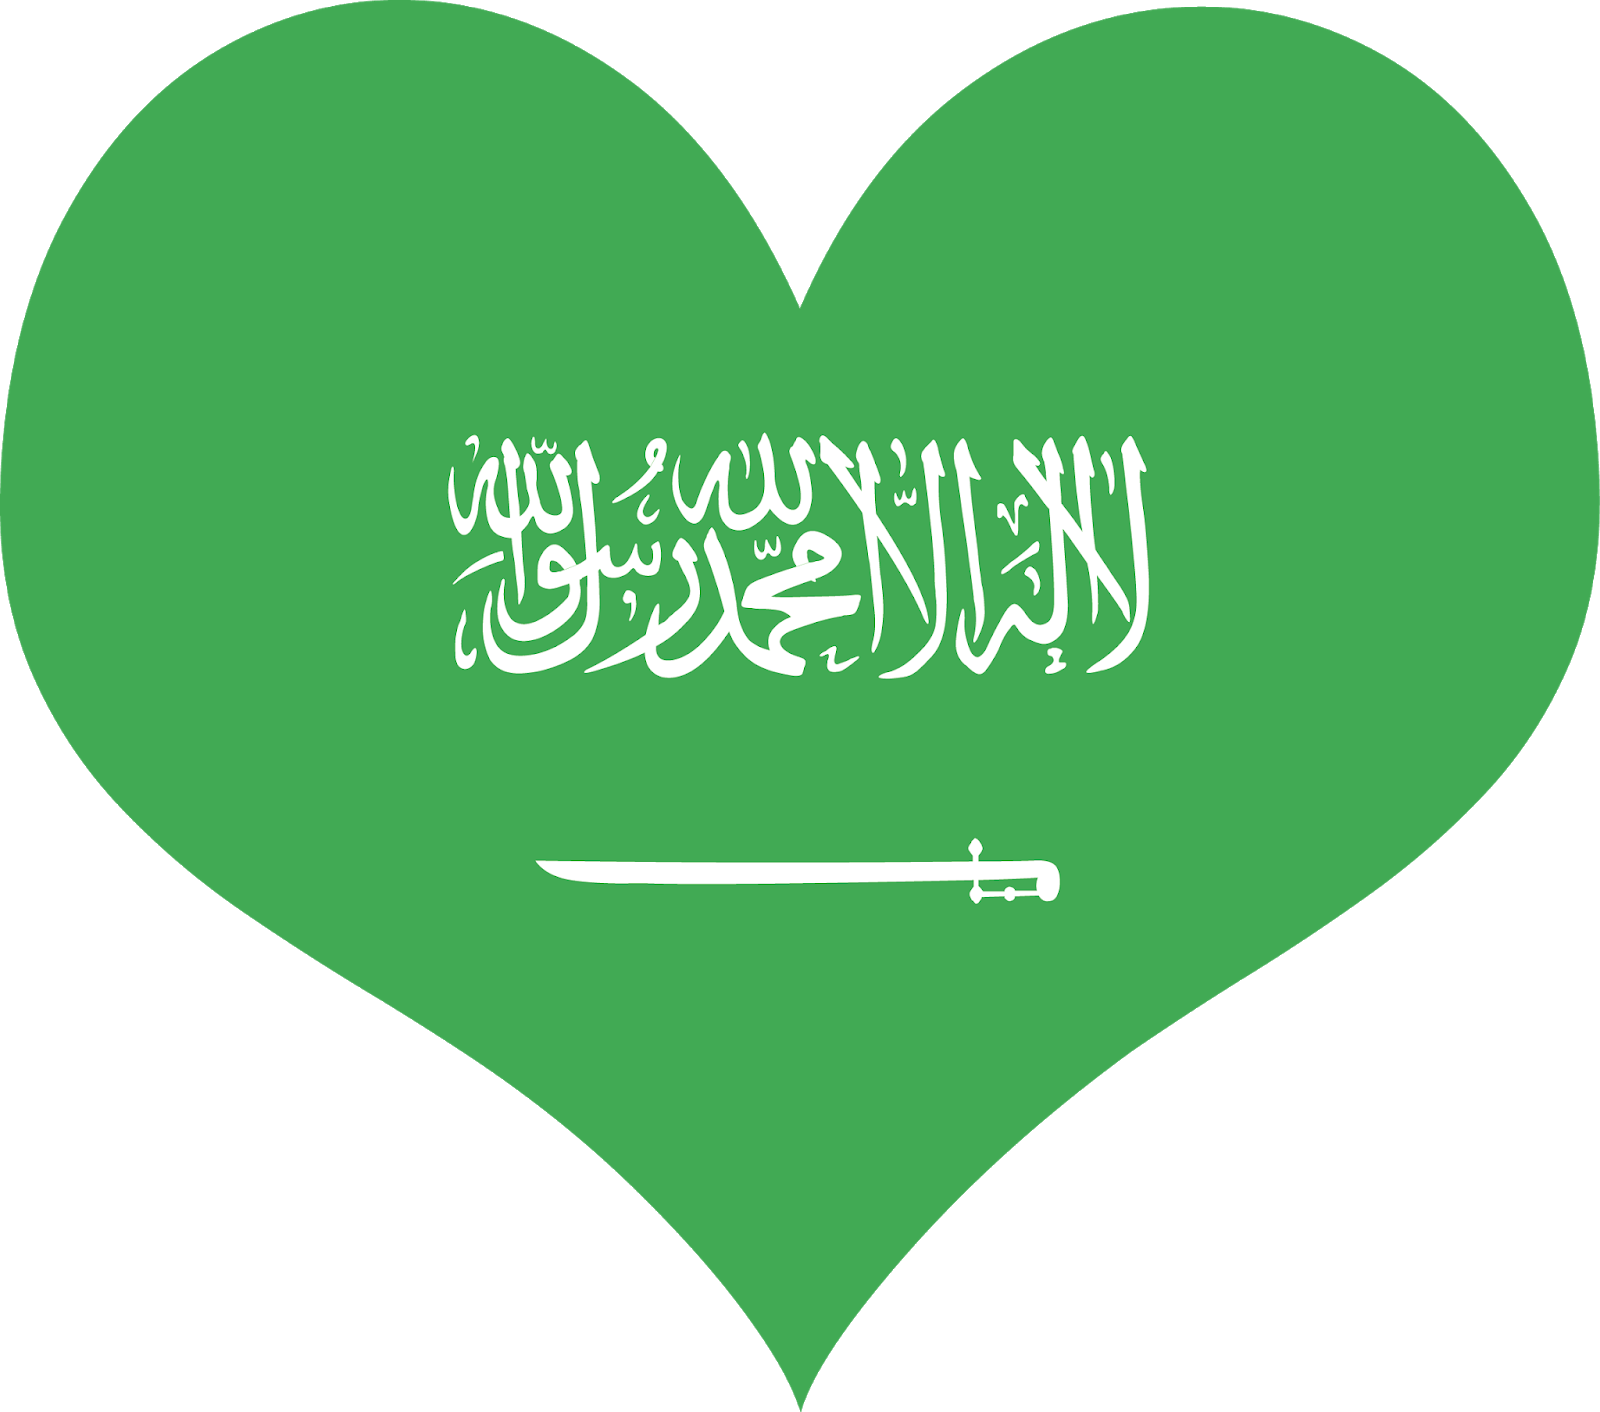 صورة علم السعودية للتحميل . تحميل صورة العلم السعودي الصور